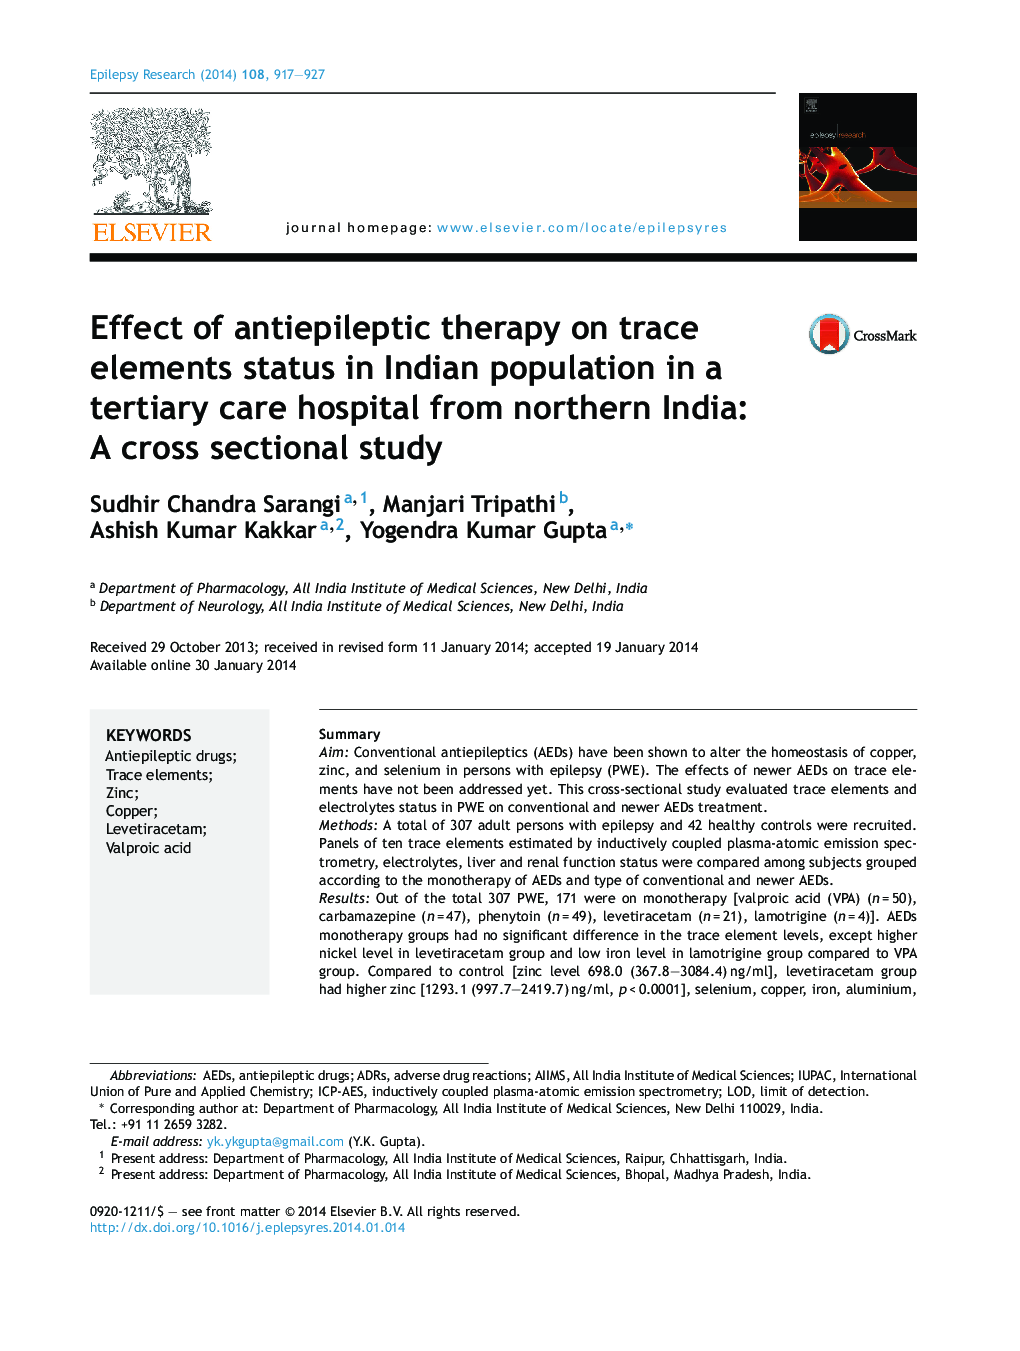 تاثیر درمان ضدعفونی بر وضعیت عناصر کمیاب در جمعیت هندی در یک بیمارستان ترمیمی مراقبتی از شمال هند: مطالعه مقطعی 